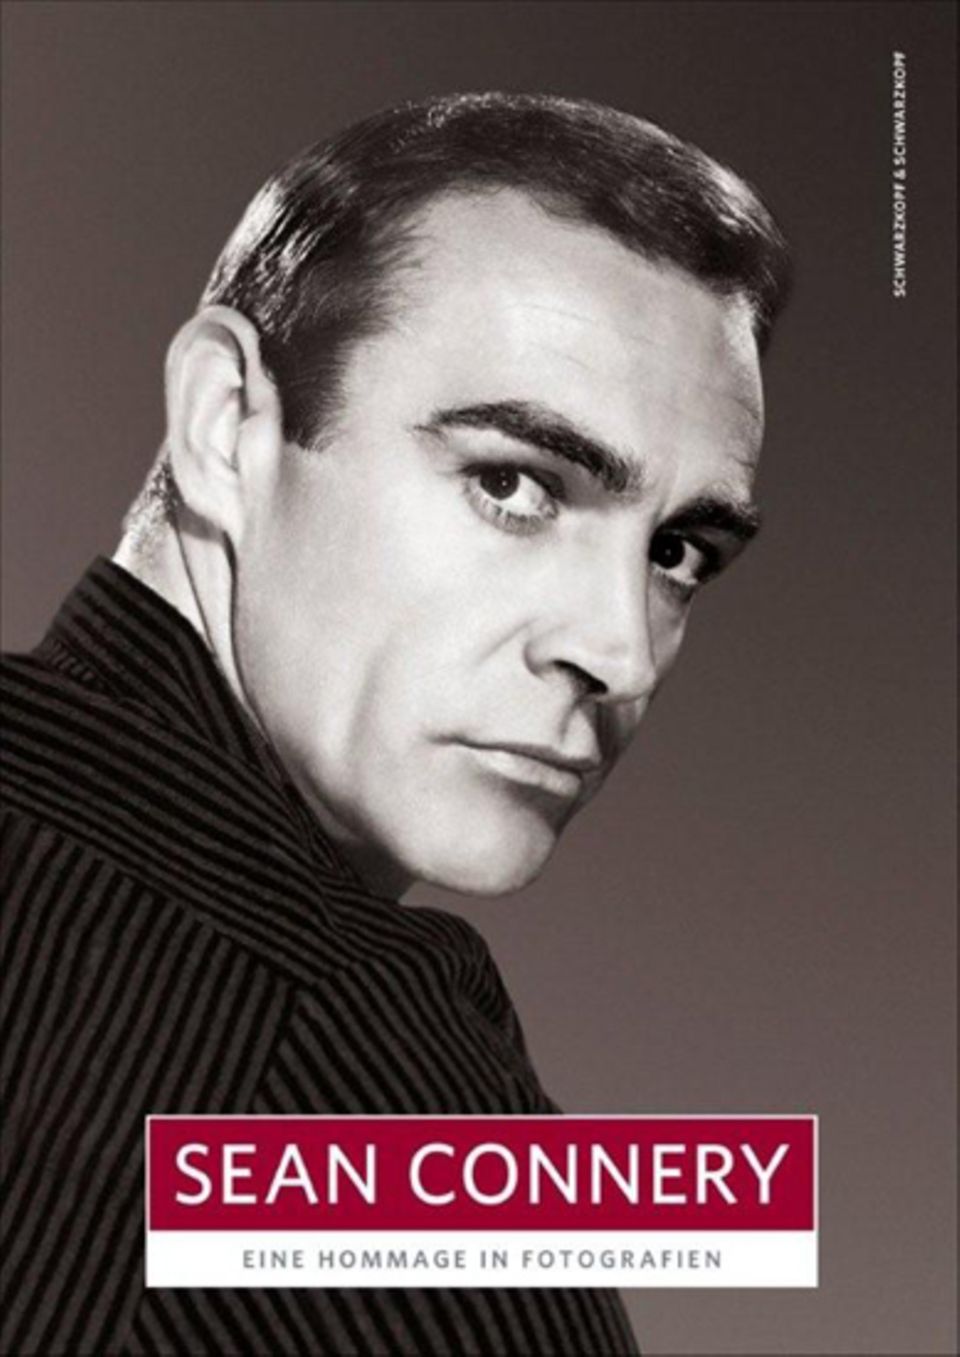 Der Bildband "Sean Connery  Eine Hommage in Fotografien" erscheint anlässlich des 80. Geburtstags des Schauspielers am 25. August 2010 im Schwarzkopf + Schwarzkopf Verlag (Preis 19,95 Euro).